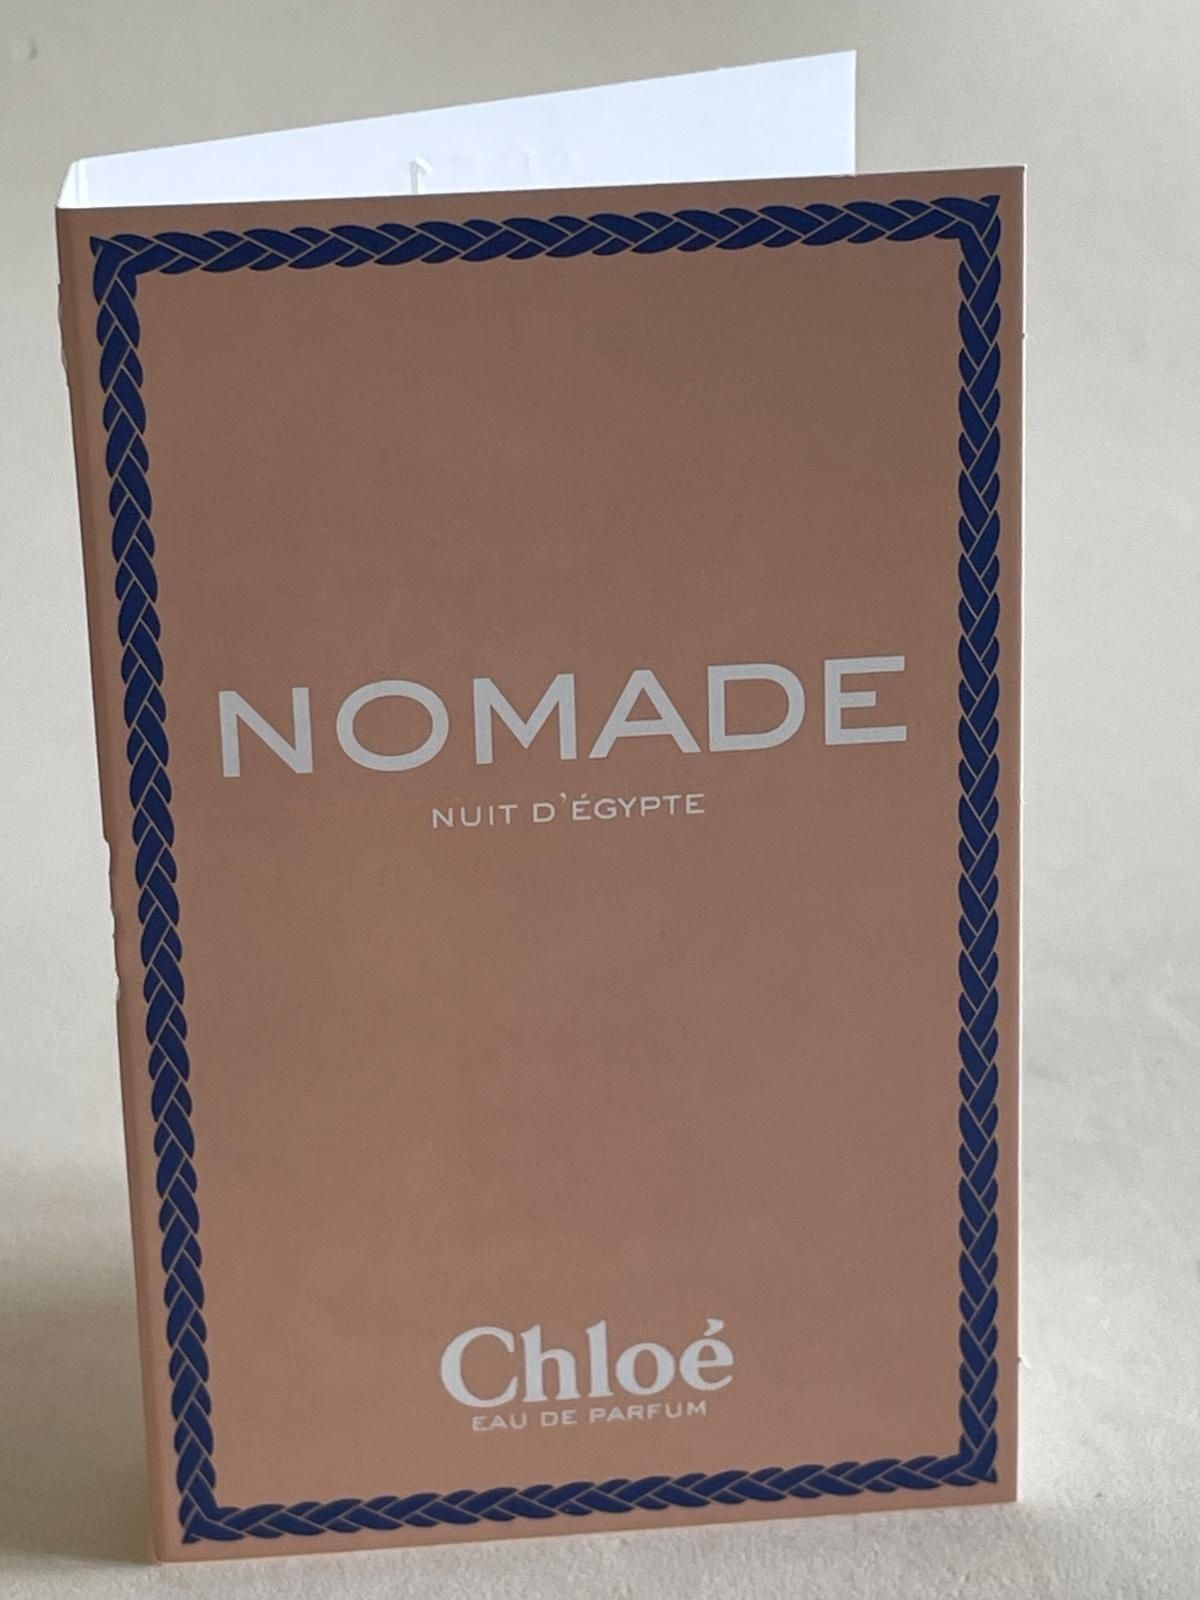 Nomade Nuit d'egypte Chloe edp 1,2ml